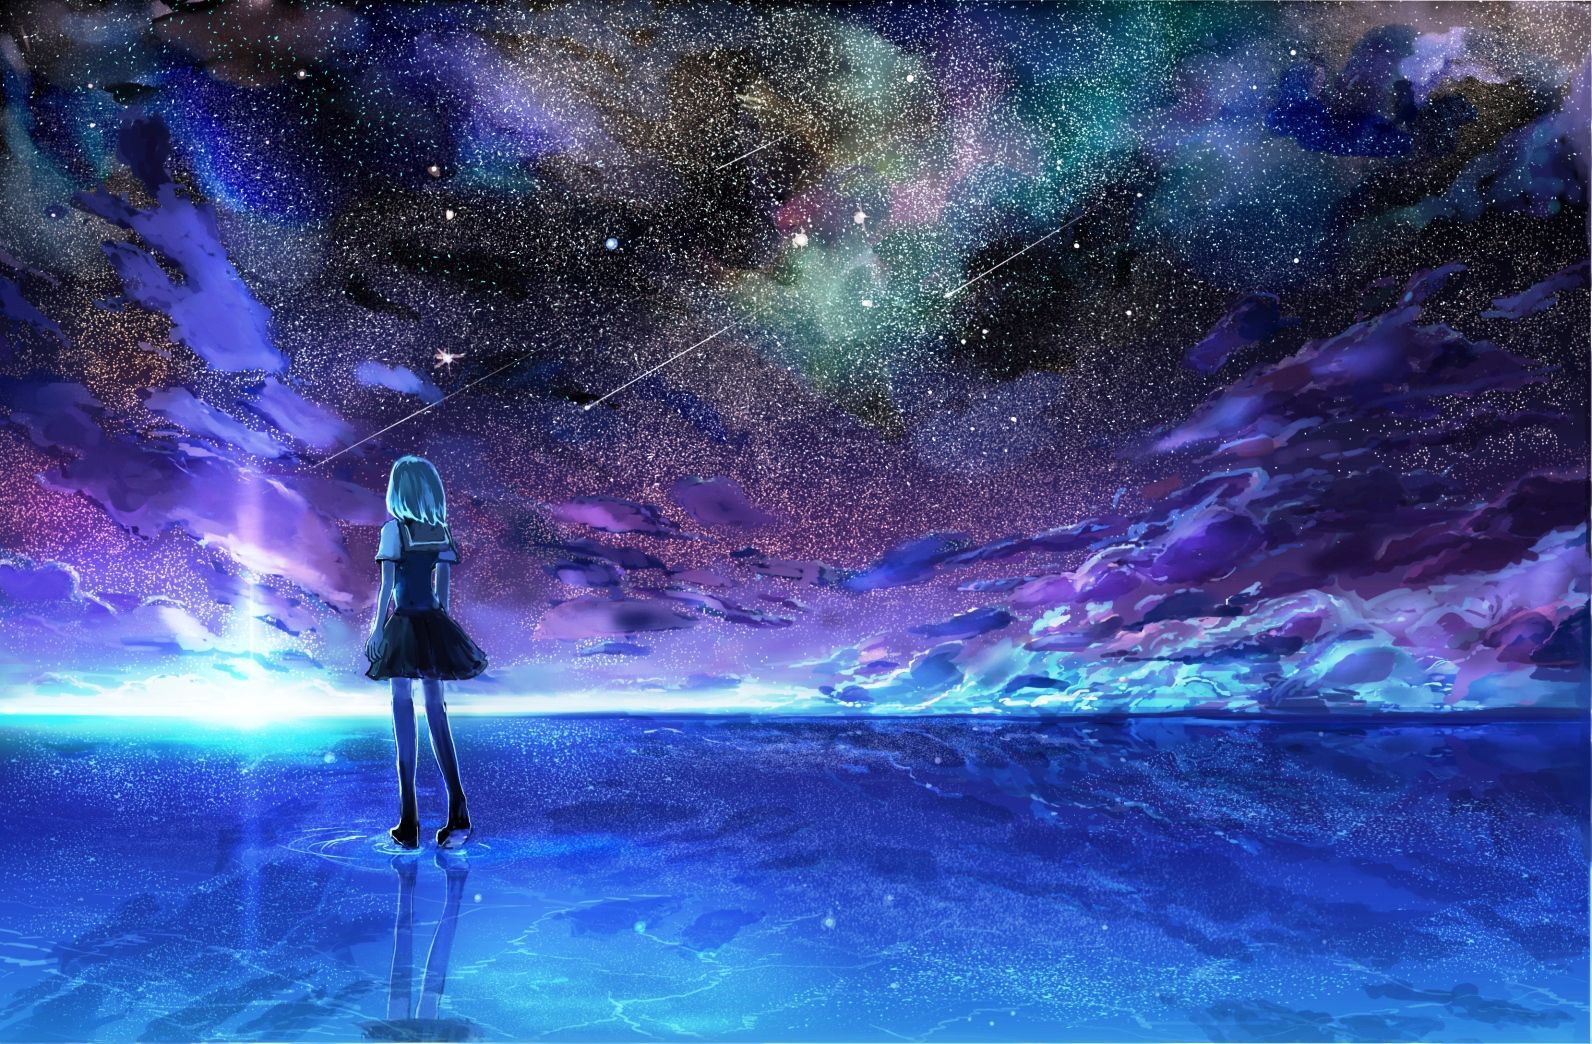 Hình ảnh bầu trời đêm anime 3D sẽ mang đến cho bạn một trải nghiệm giải trí tuyệt vời. Các nhân vật từ thế giới anime sẽ xuất hiện trên nền bầu trời đầy sao sáng lấp lánh. Bạn sẽ cảm thấy chìm đắm trong thế giới giả tưởng đầy màu sắc và đầy ma mị.